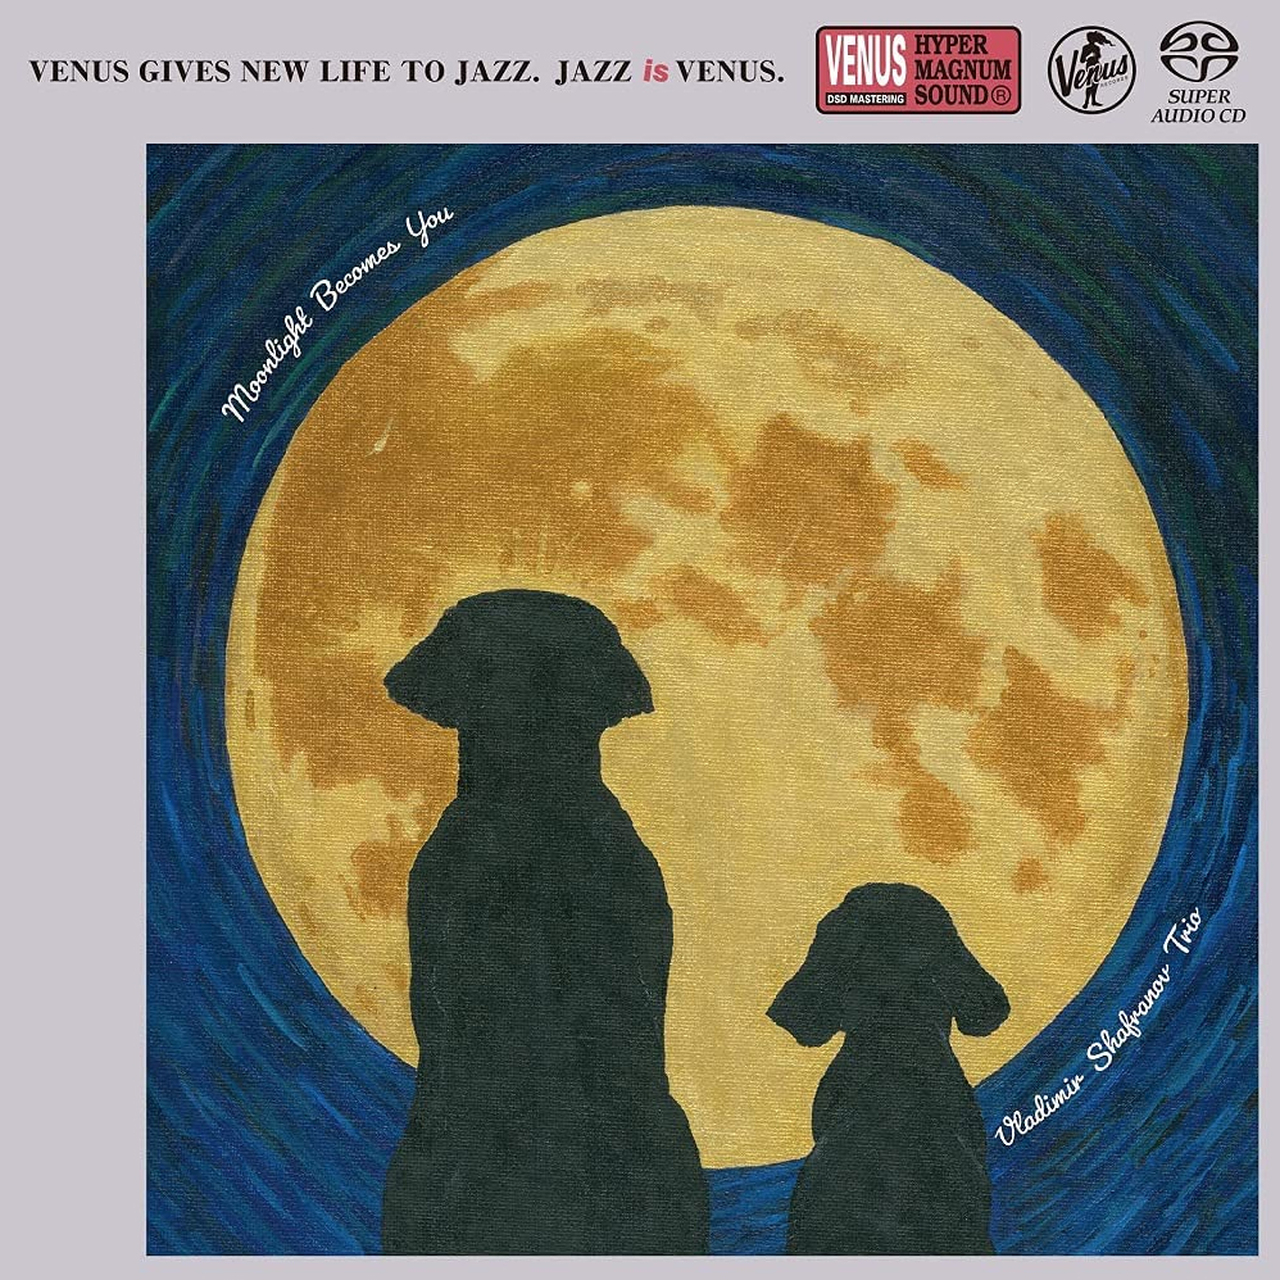 Vladimir Shafranov Trio – Moonlight Becomes You [Venus Japan] (2021) SACD ISO + DSF DSD64 + Hi-Res FLAC